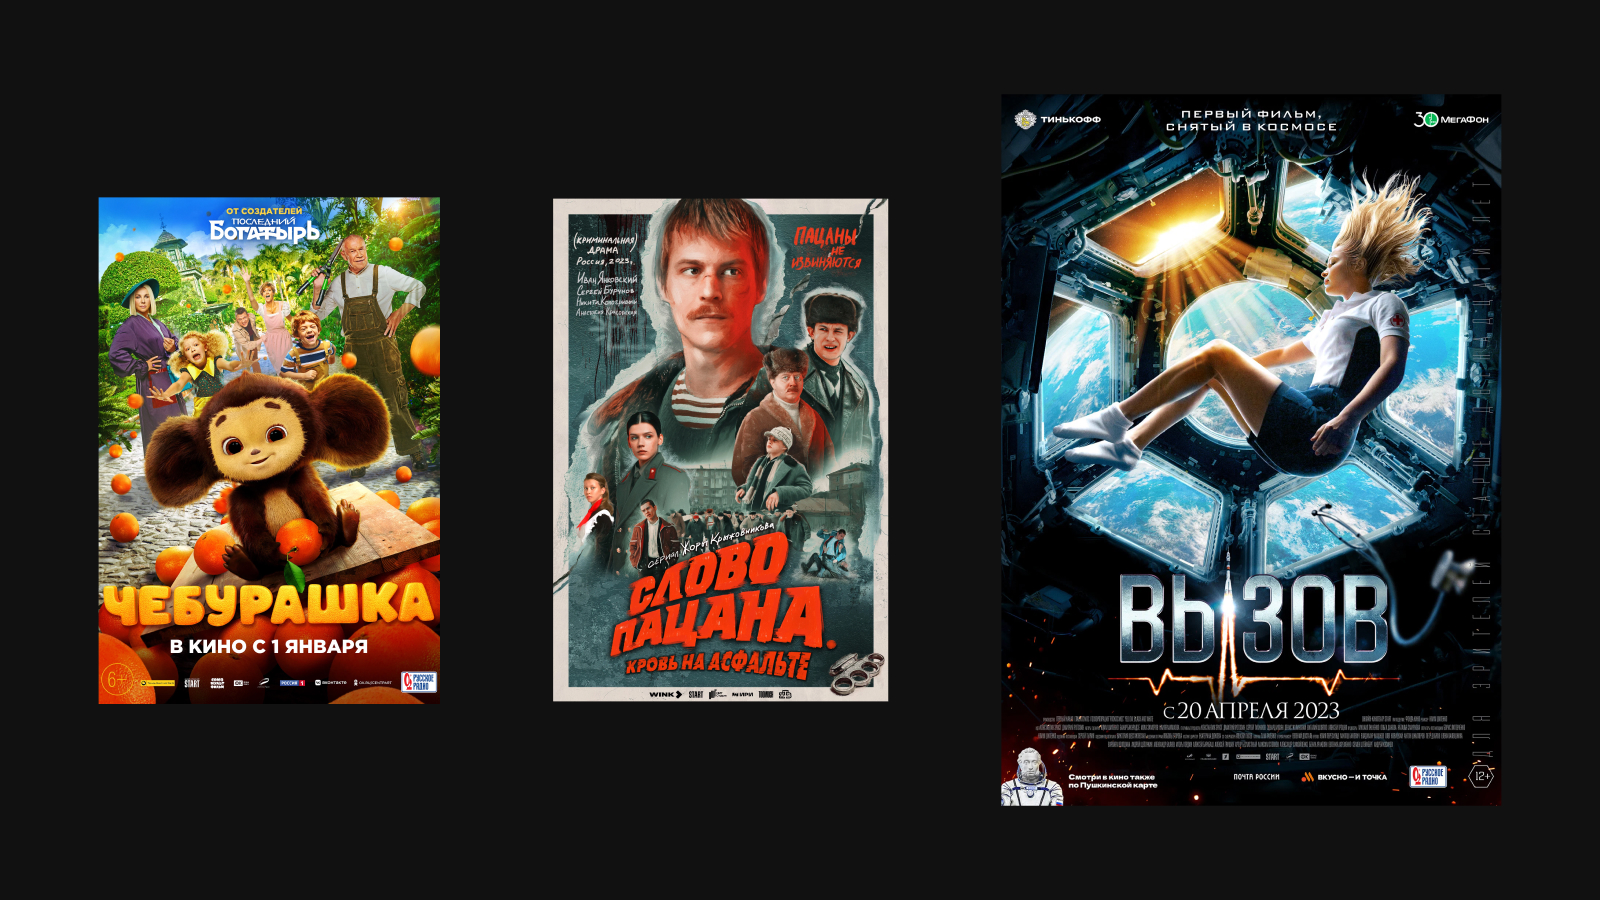 Русские фильмы смотреть онлайн бесплатно. Лучшие русские фильмы в хорошем качестве HD на Tvigle